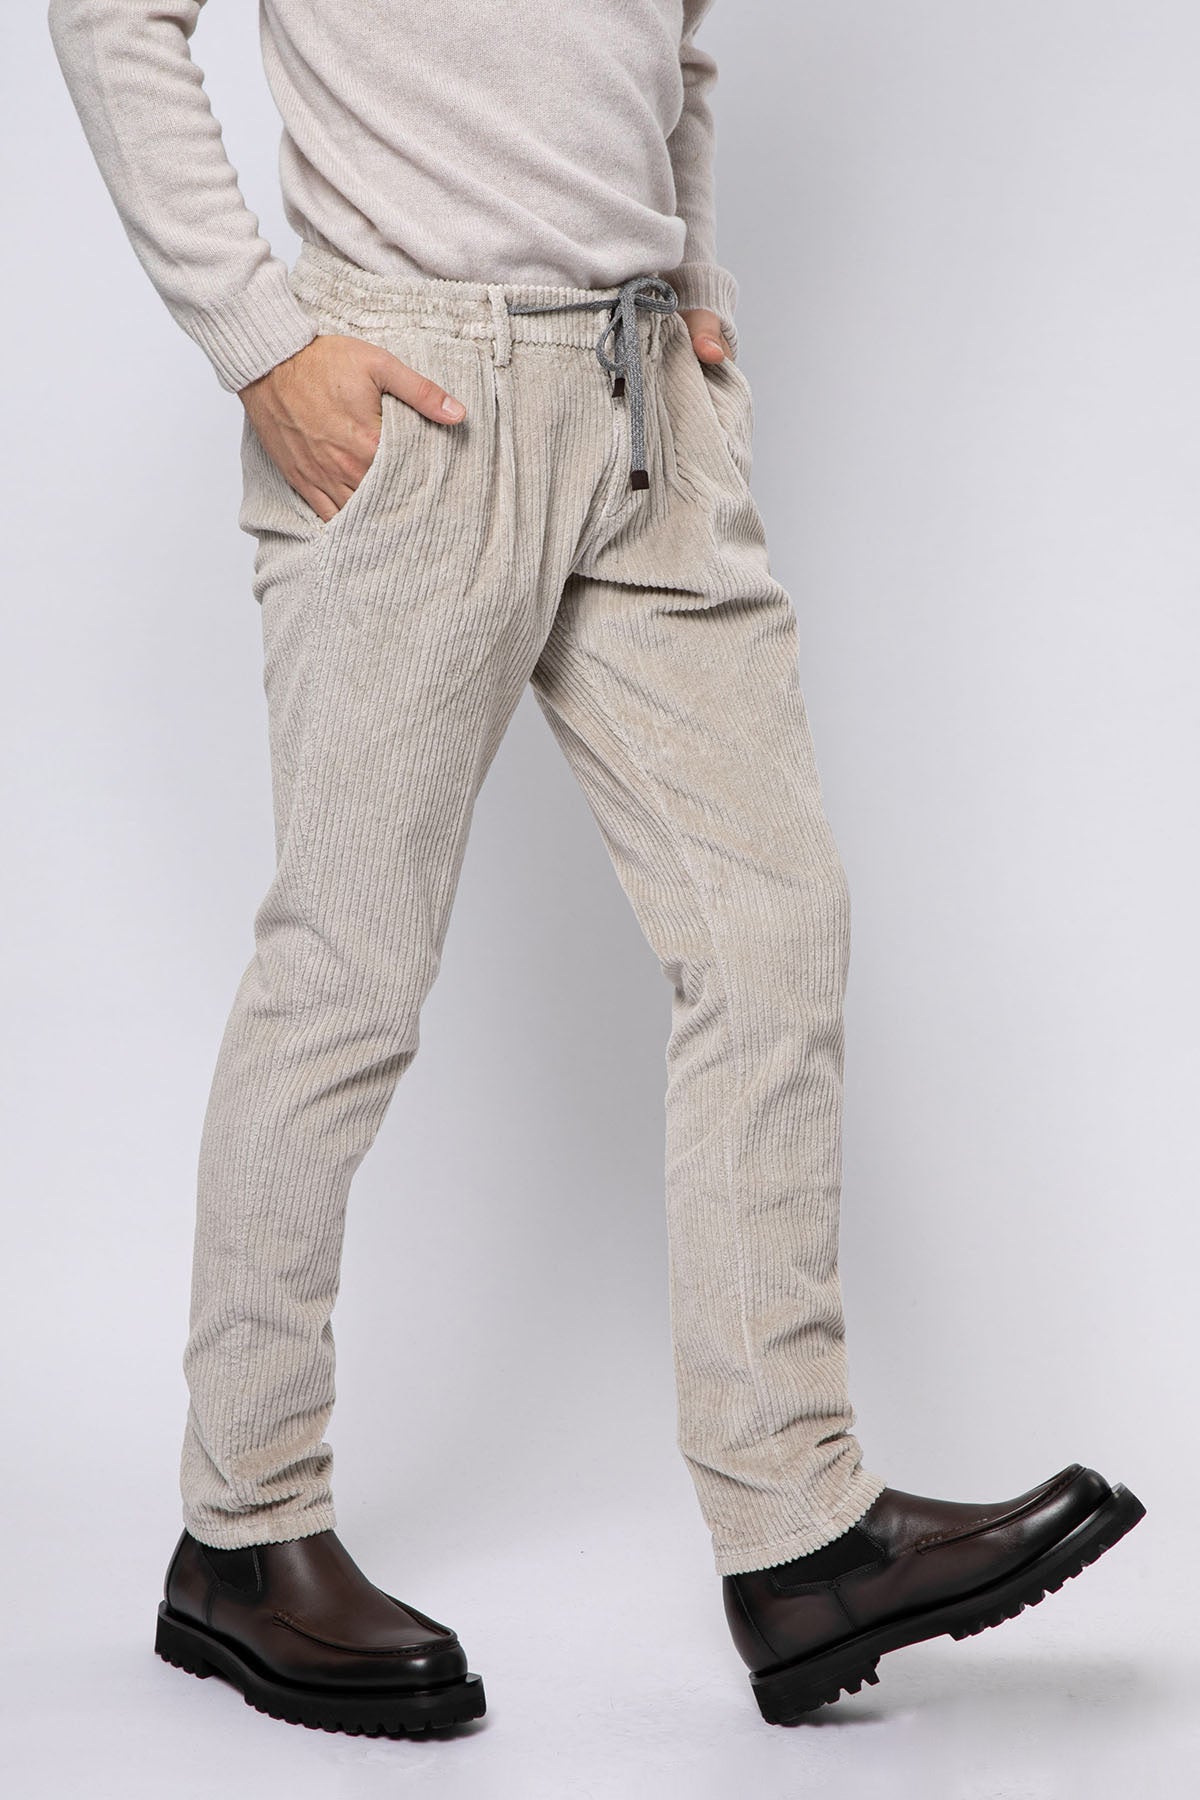 Fradi Smooth Fit Fitilli Kadife Beli Lastikli Tek Pile Streç Pantolon-Libas Trendy Fashion Store